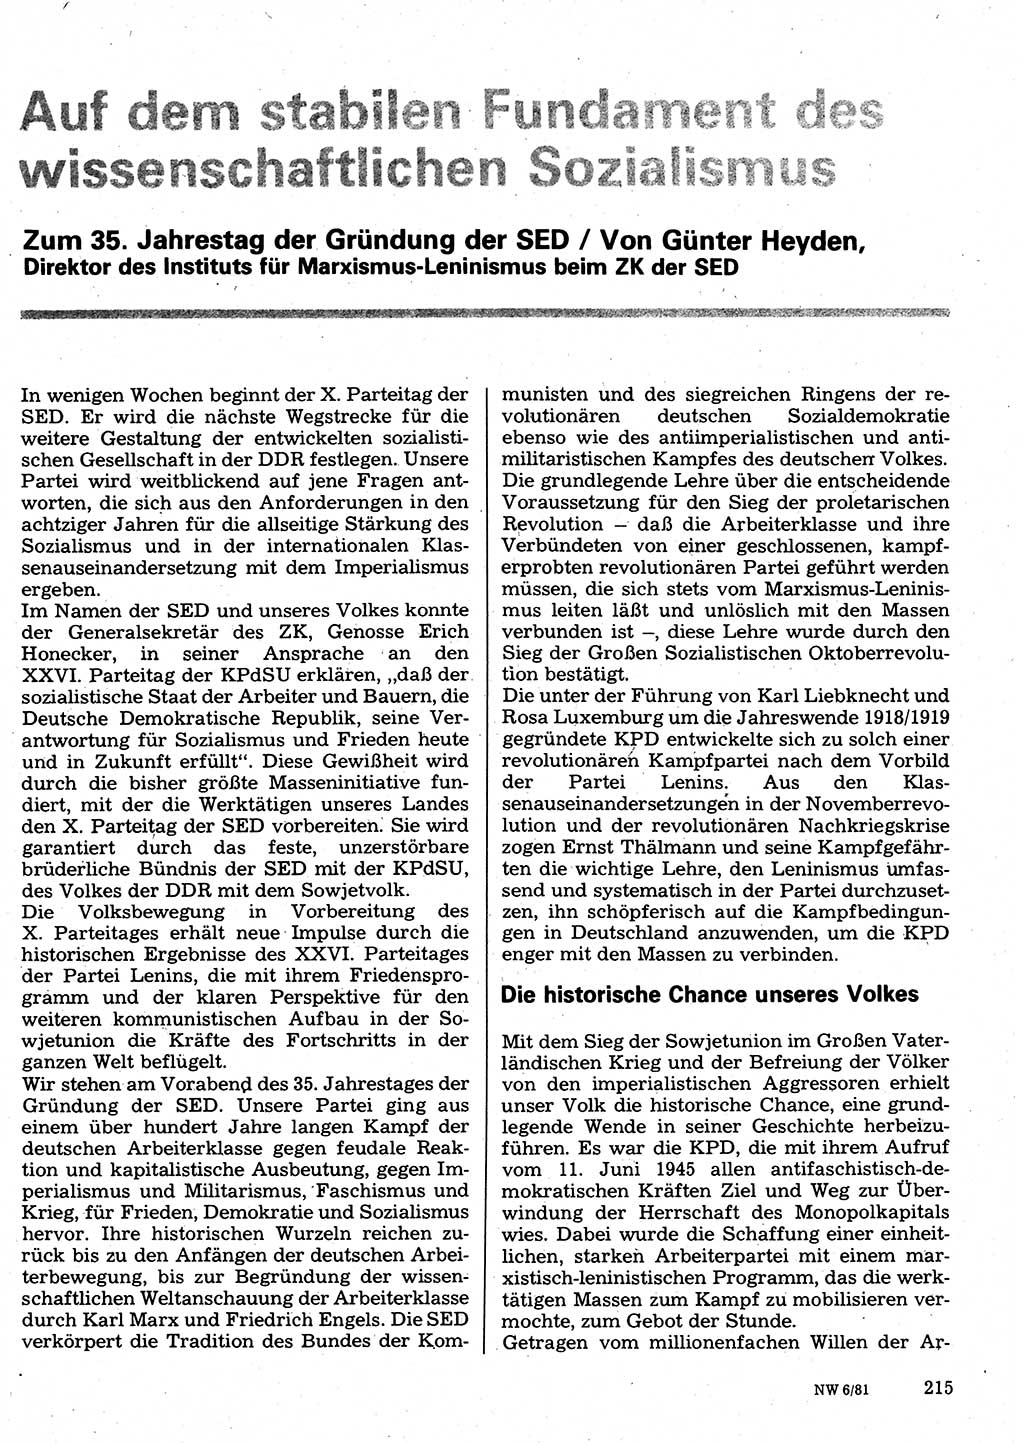 Neuer Weg (NW), Organ des Zentralkomitees (ZK) der SED (Sozialistische Einheitspartei Deutschlands) für Fragen des Parteilebens, 36. Jahrgang [Deutsche Demokratische Republik (DDR)] 1981, Seite 215 (NW ZK SED DDR 1981, S. 215)